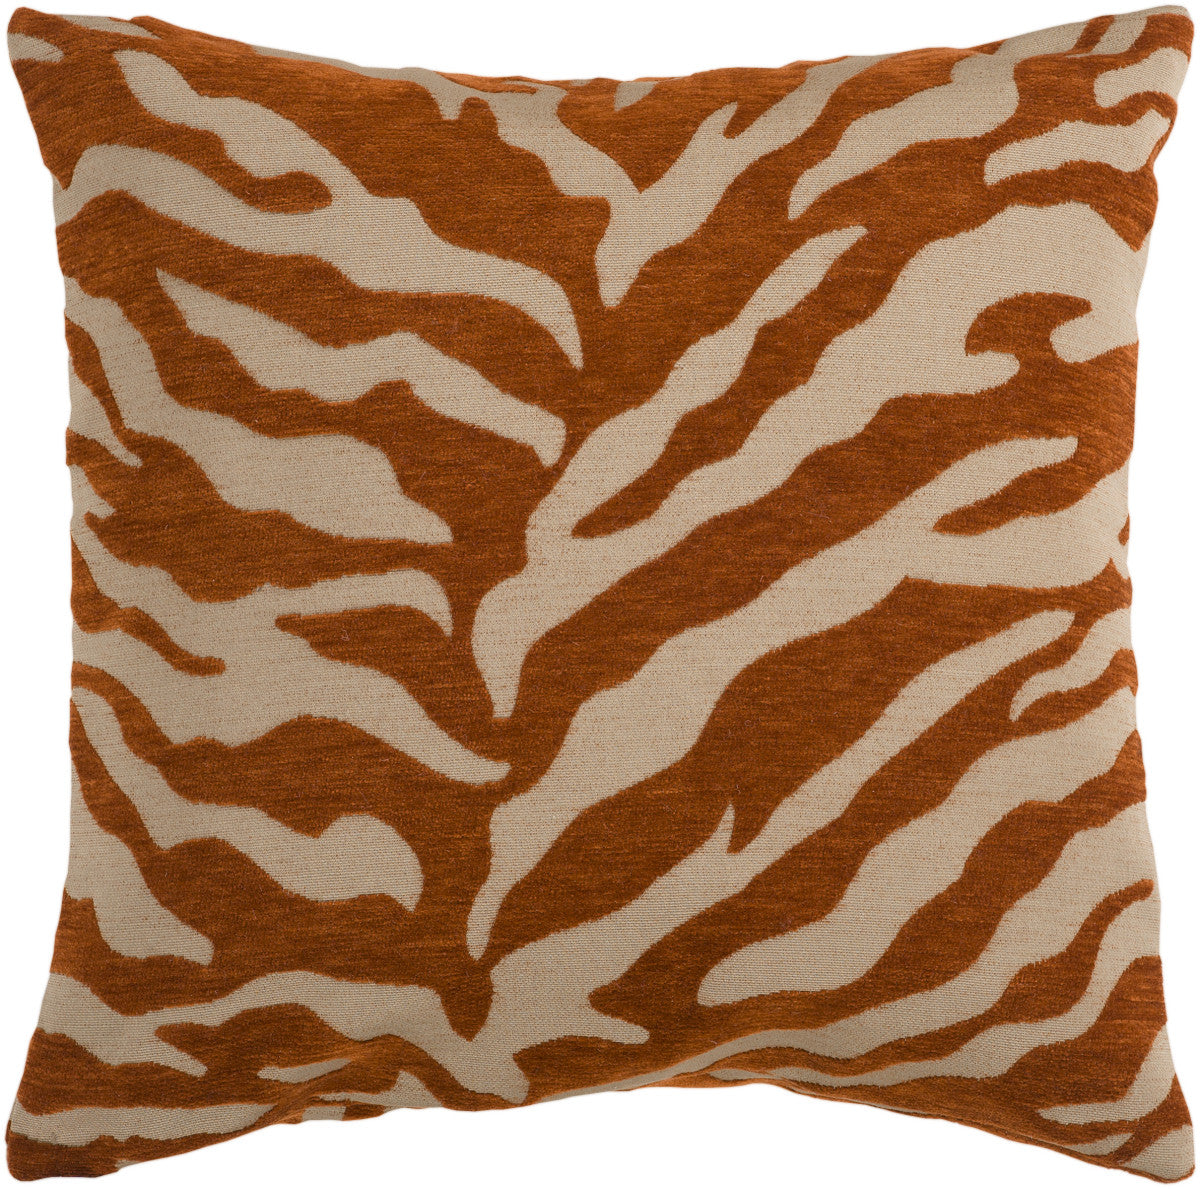 Surya Velvet Zebra Eye-catching Patterned JS-028 Pillow